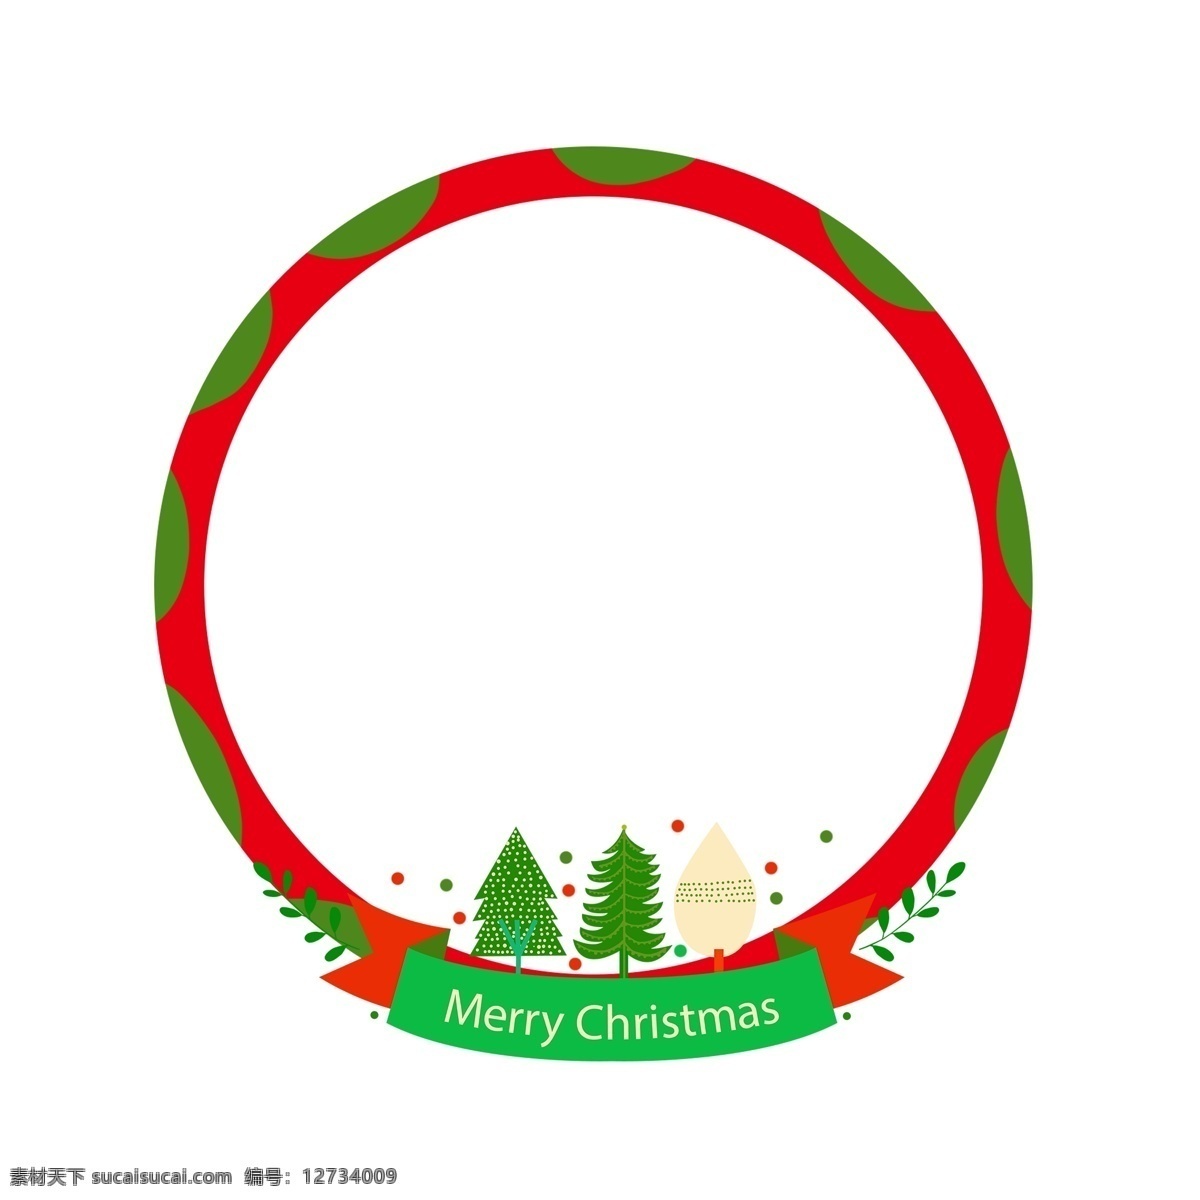 手绘 圣诞节 圣诞树 边框 绿色的圣诞树 圆形的边框 圣诞节边框 漂亮的边框 卡通边框